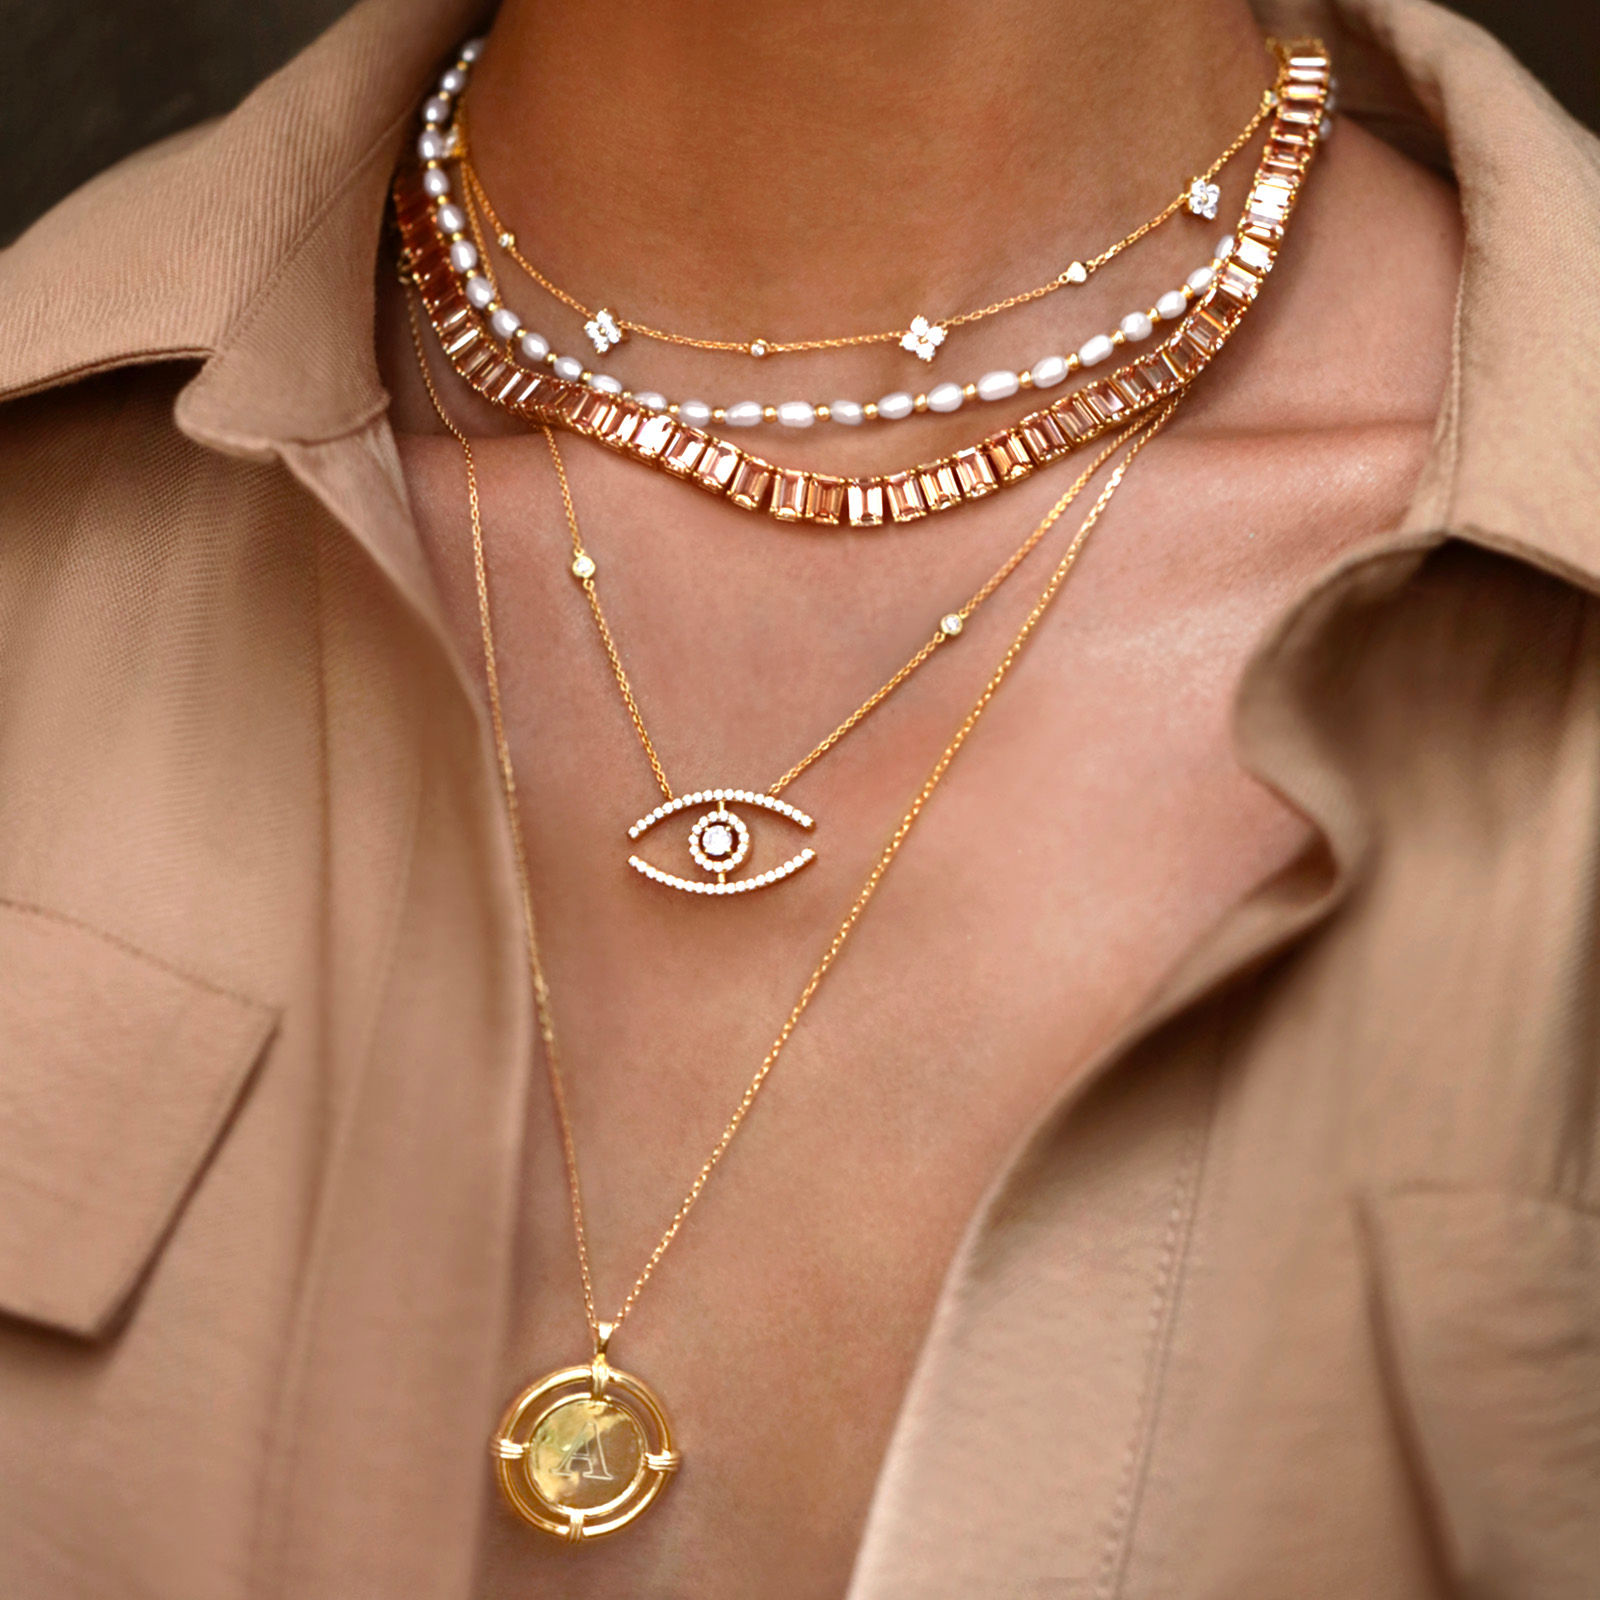 Изображение крупным планом ожерелья Tudor Premium, демонстрирующее его замысловатый дизайн и сверкающие белые сапфиры.